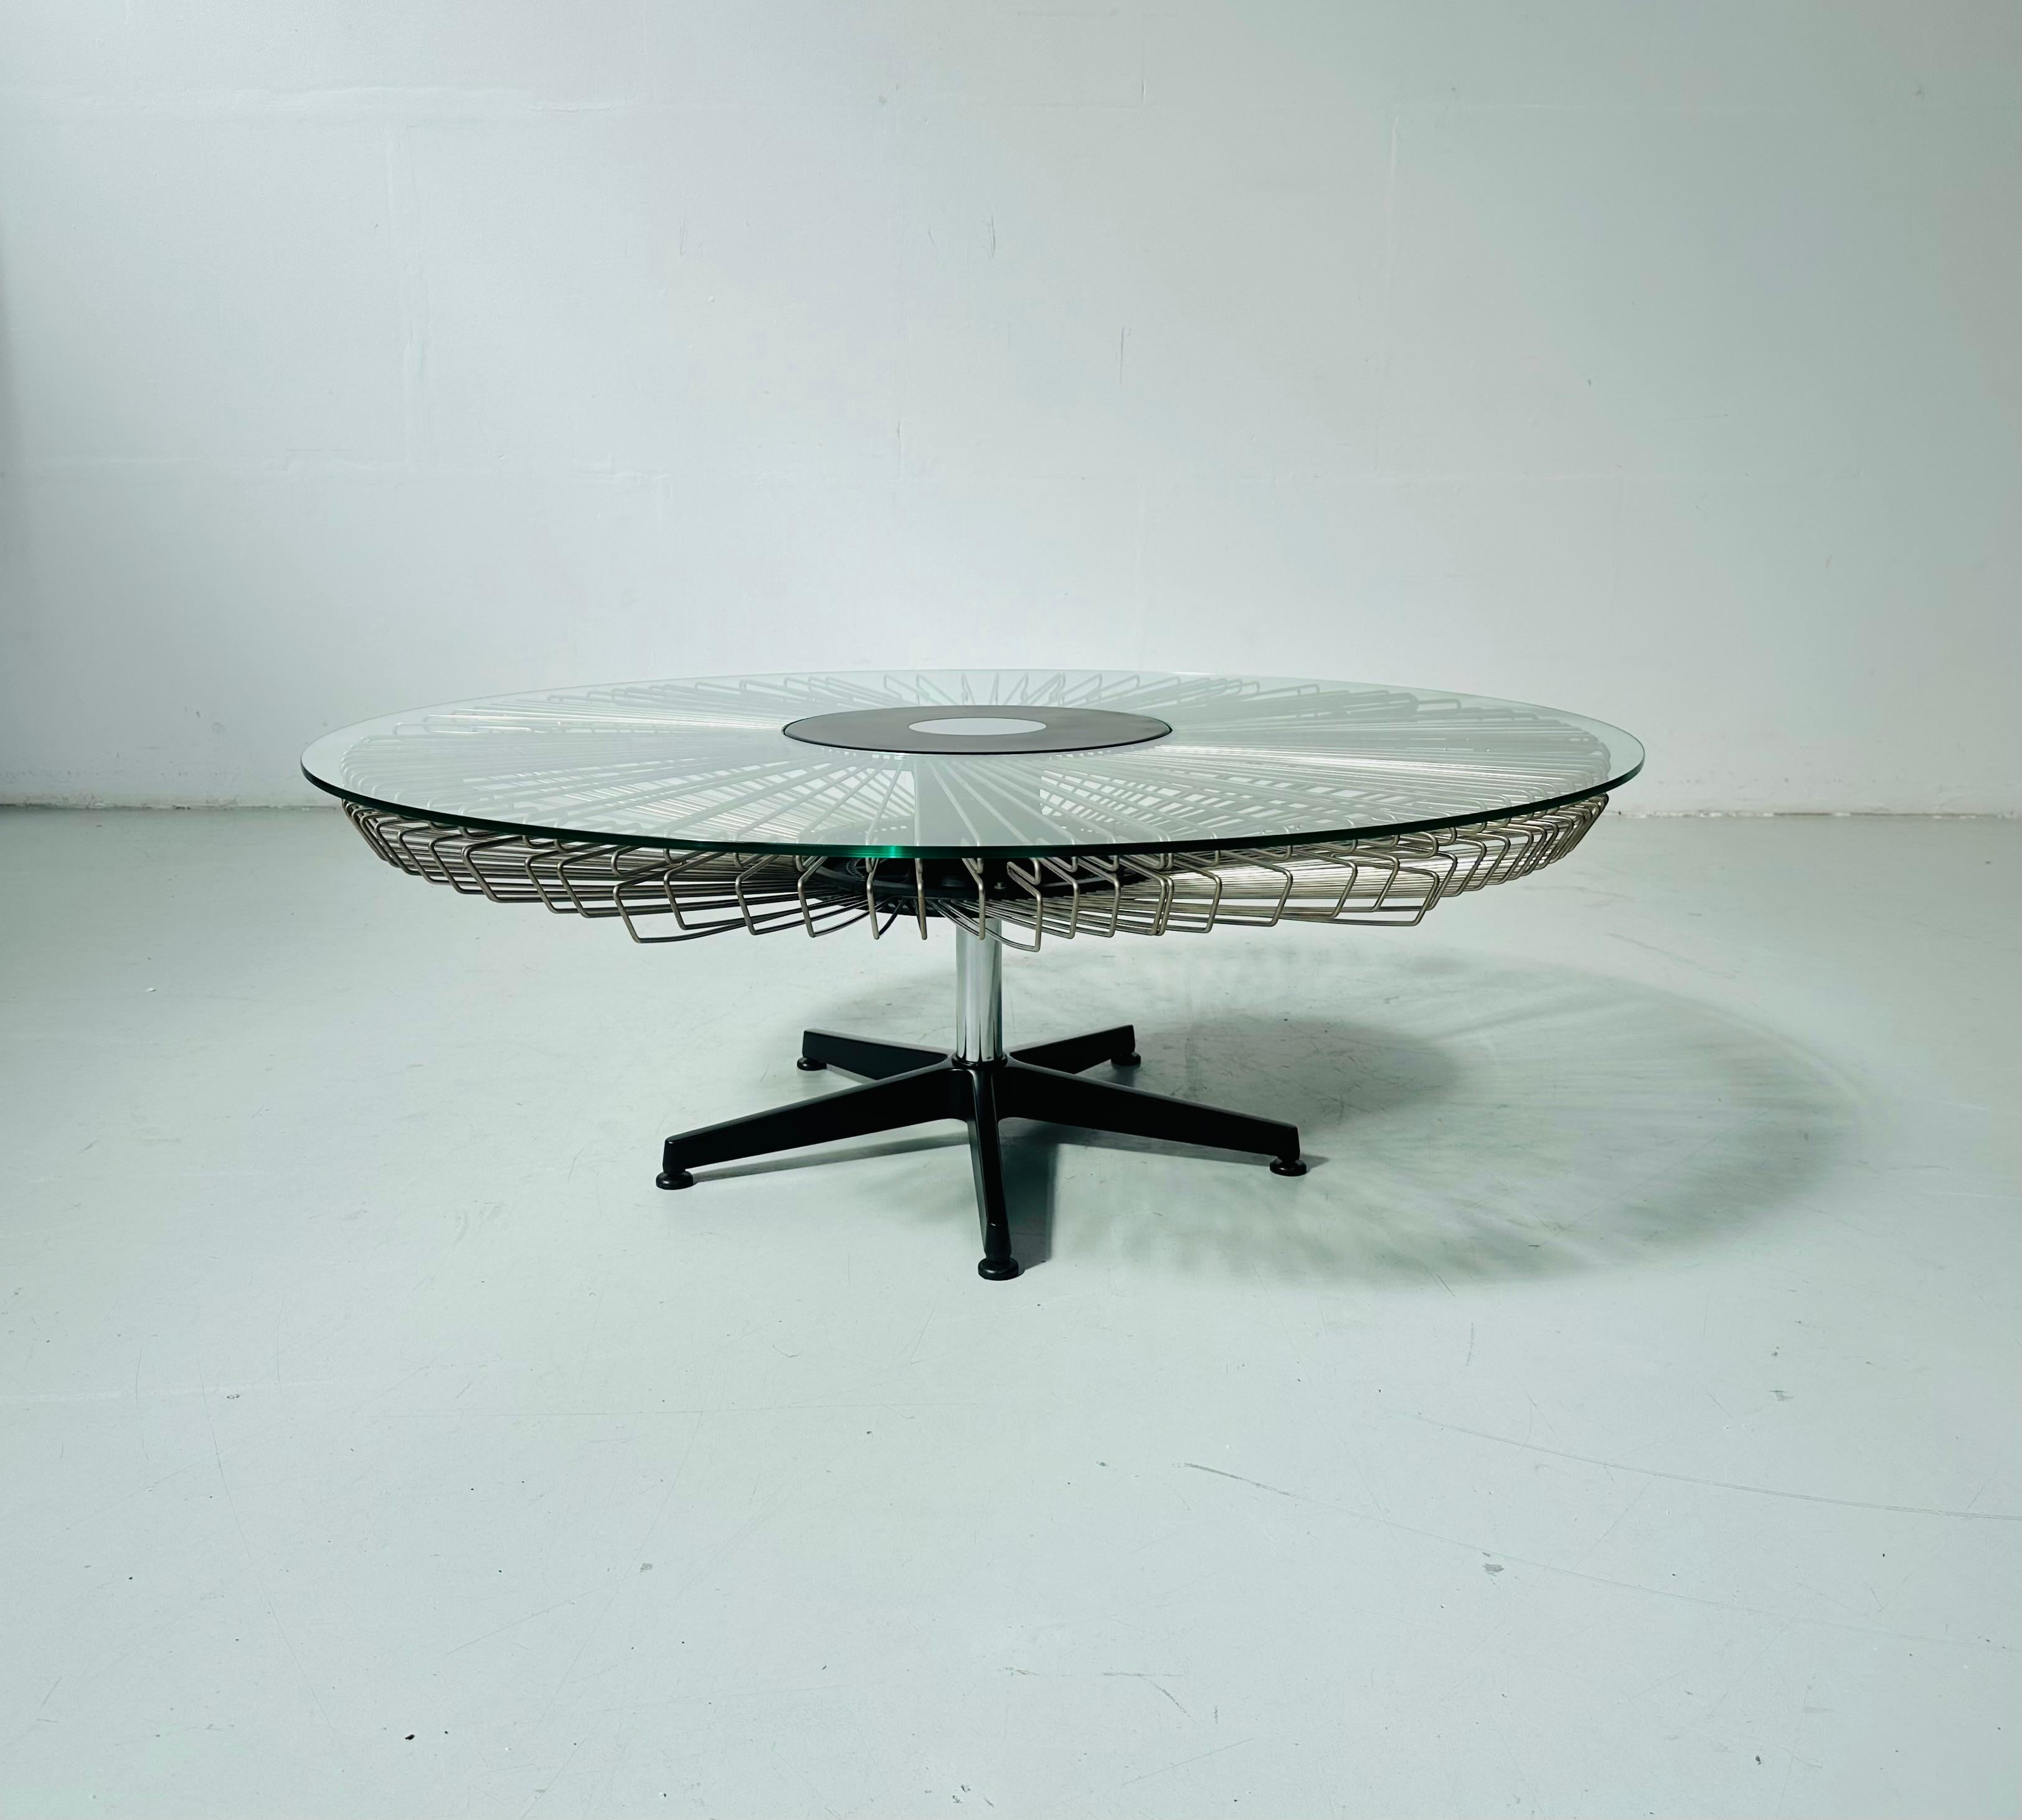 Il s'agit de l'une des 8 tables basses conçues et fabriquées pour plusieurs défilés de mode pour Prada dans les années quatre-vingt-dix. Le plateau en verre épais est doté d'une grande ouverture au milieu de laquelle passe la base noire. Le plateau